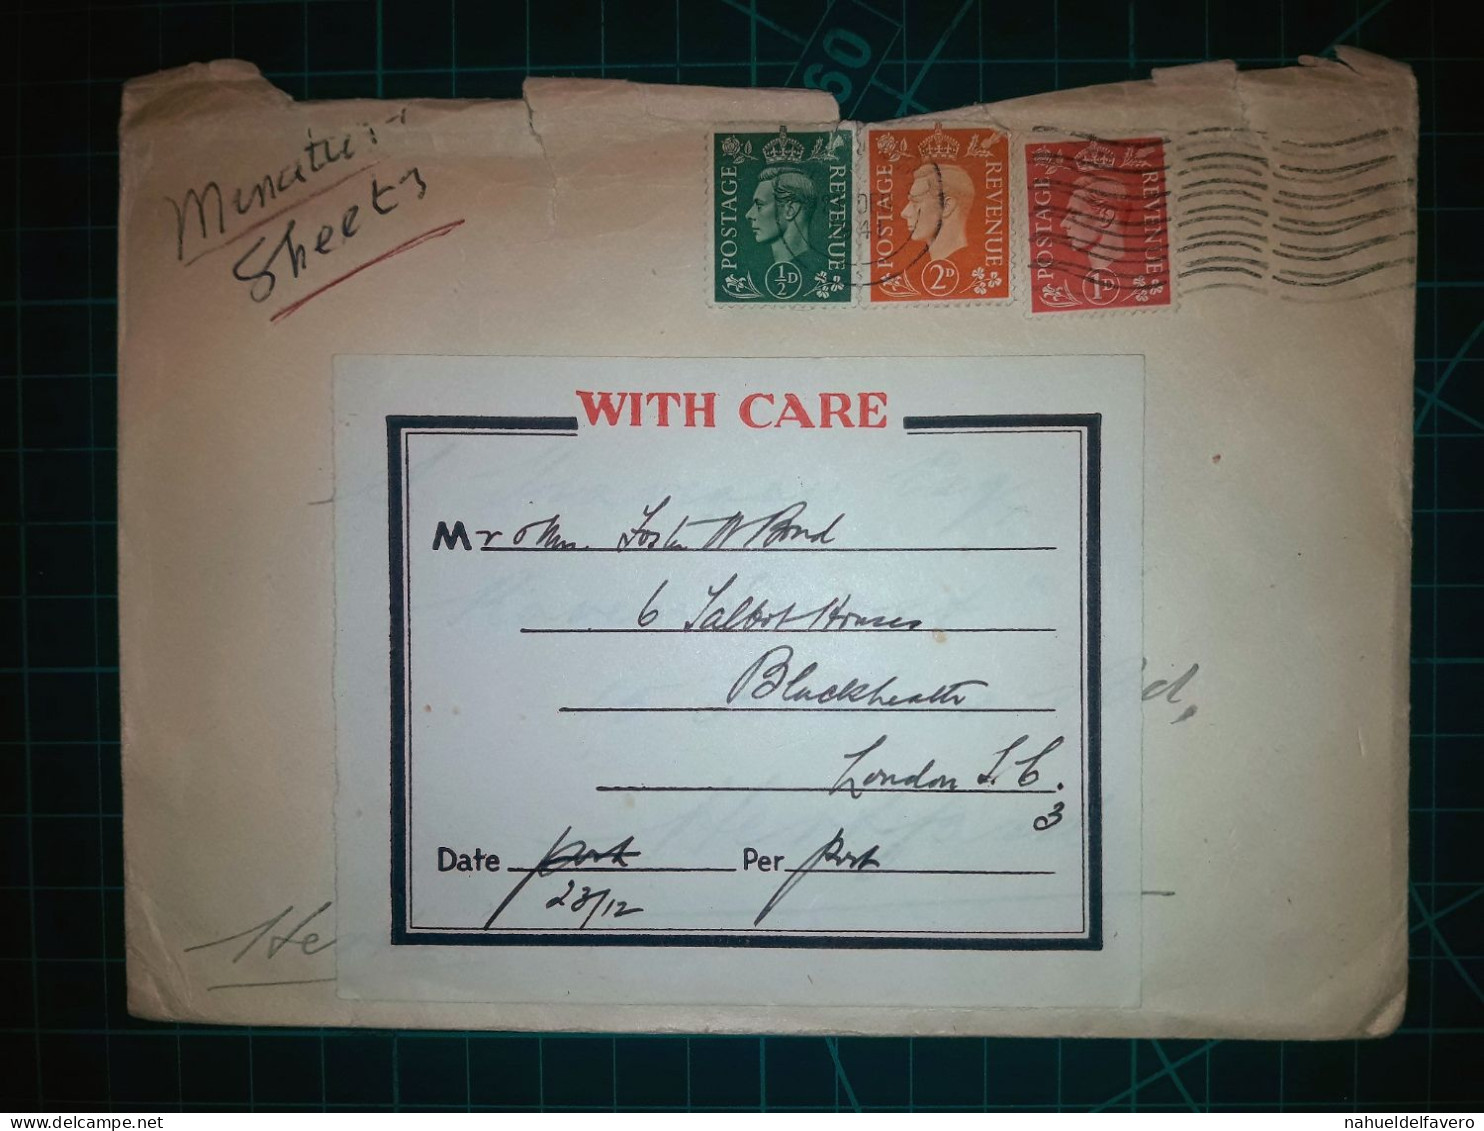 ANGLETERRE, Enveloppe A Circulé à Londres Avec Une Variété Colorée De Timbres-poste. Années 1940 - Oblitérés